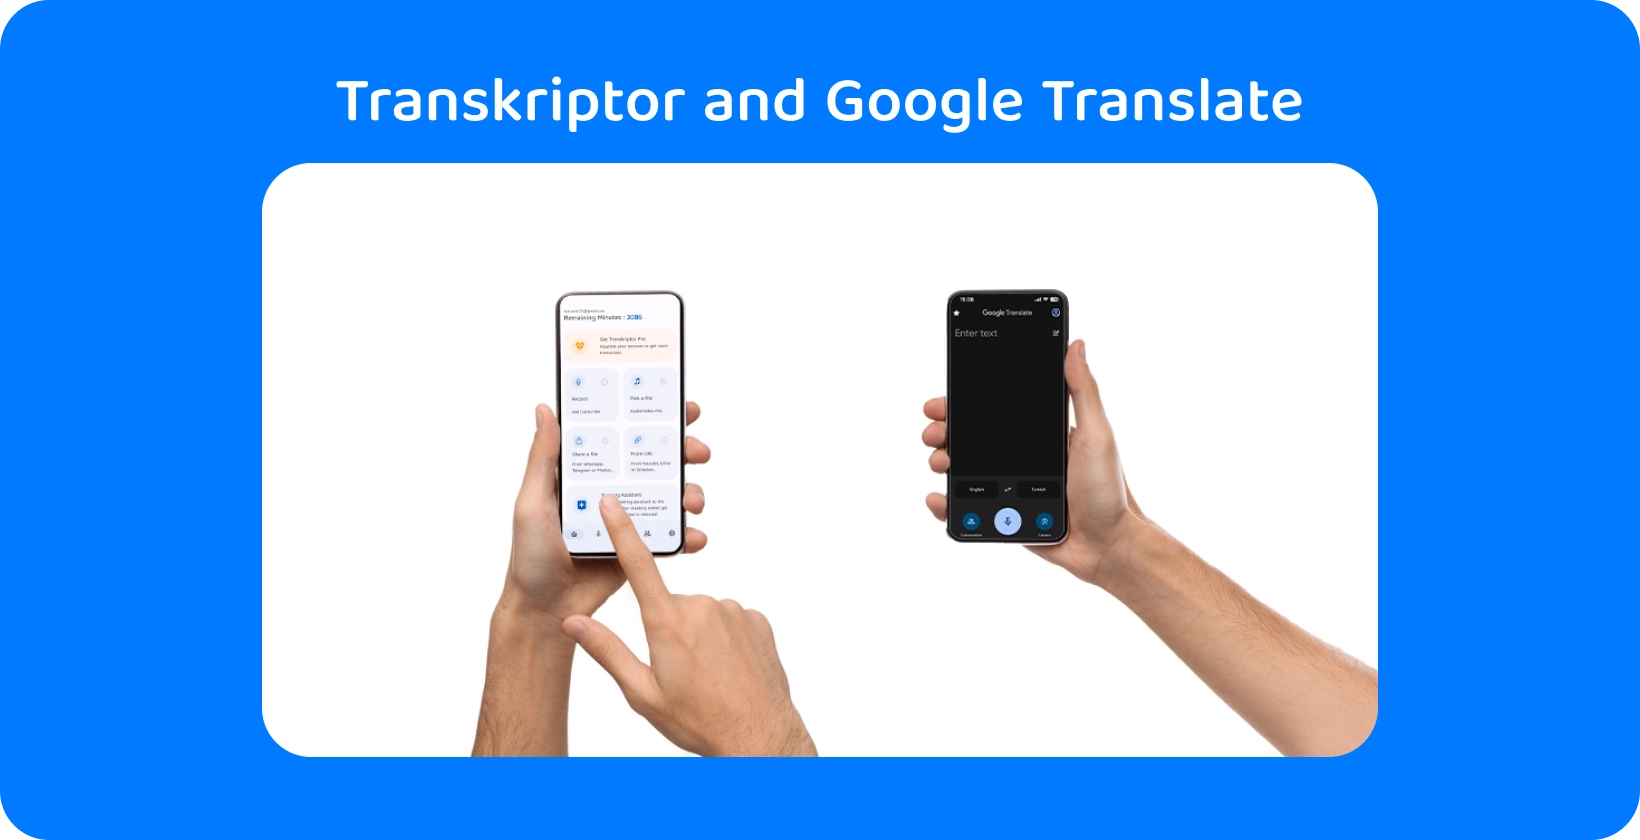 Dua tangan memegang smartphone dengan Transkriptor dan Google Translate, menunjukkan transkripsi audio dan terjemahan.